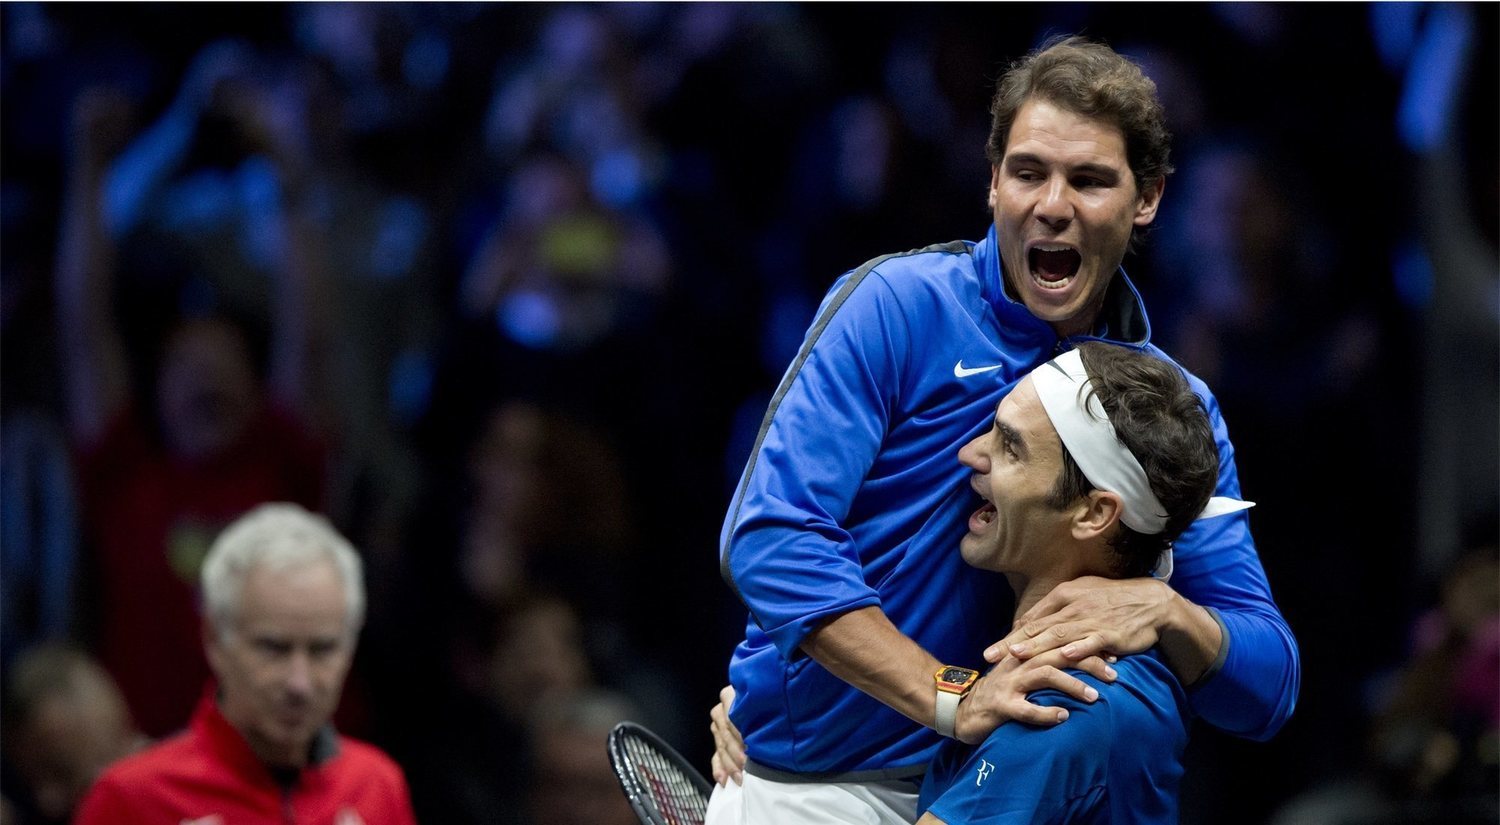 Los 6 mejores momentos de los Nadal-Federer